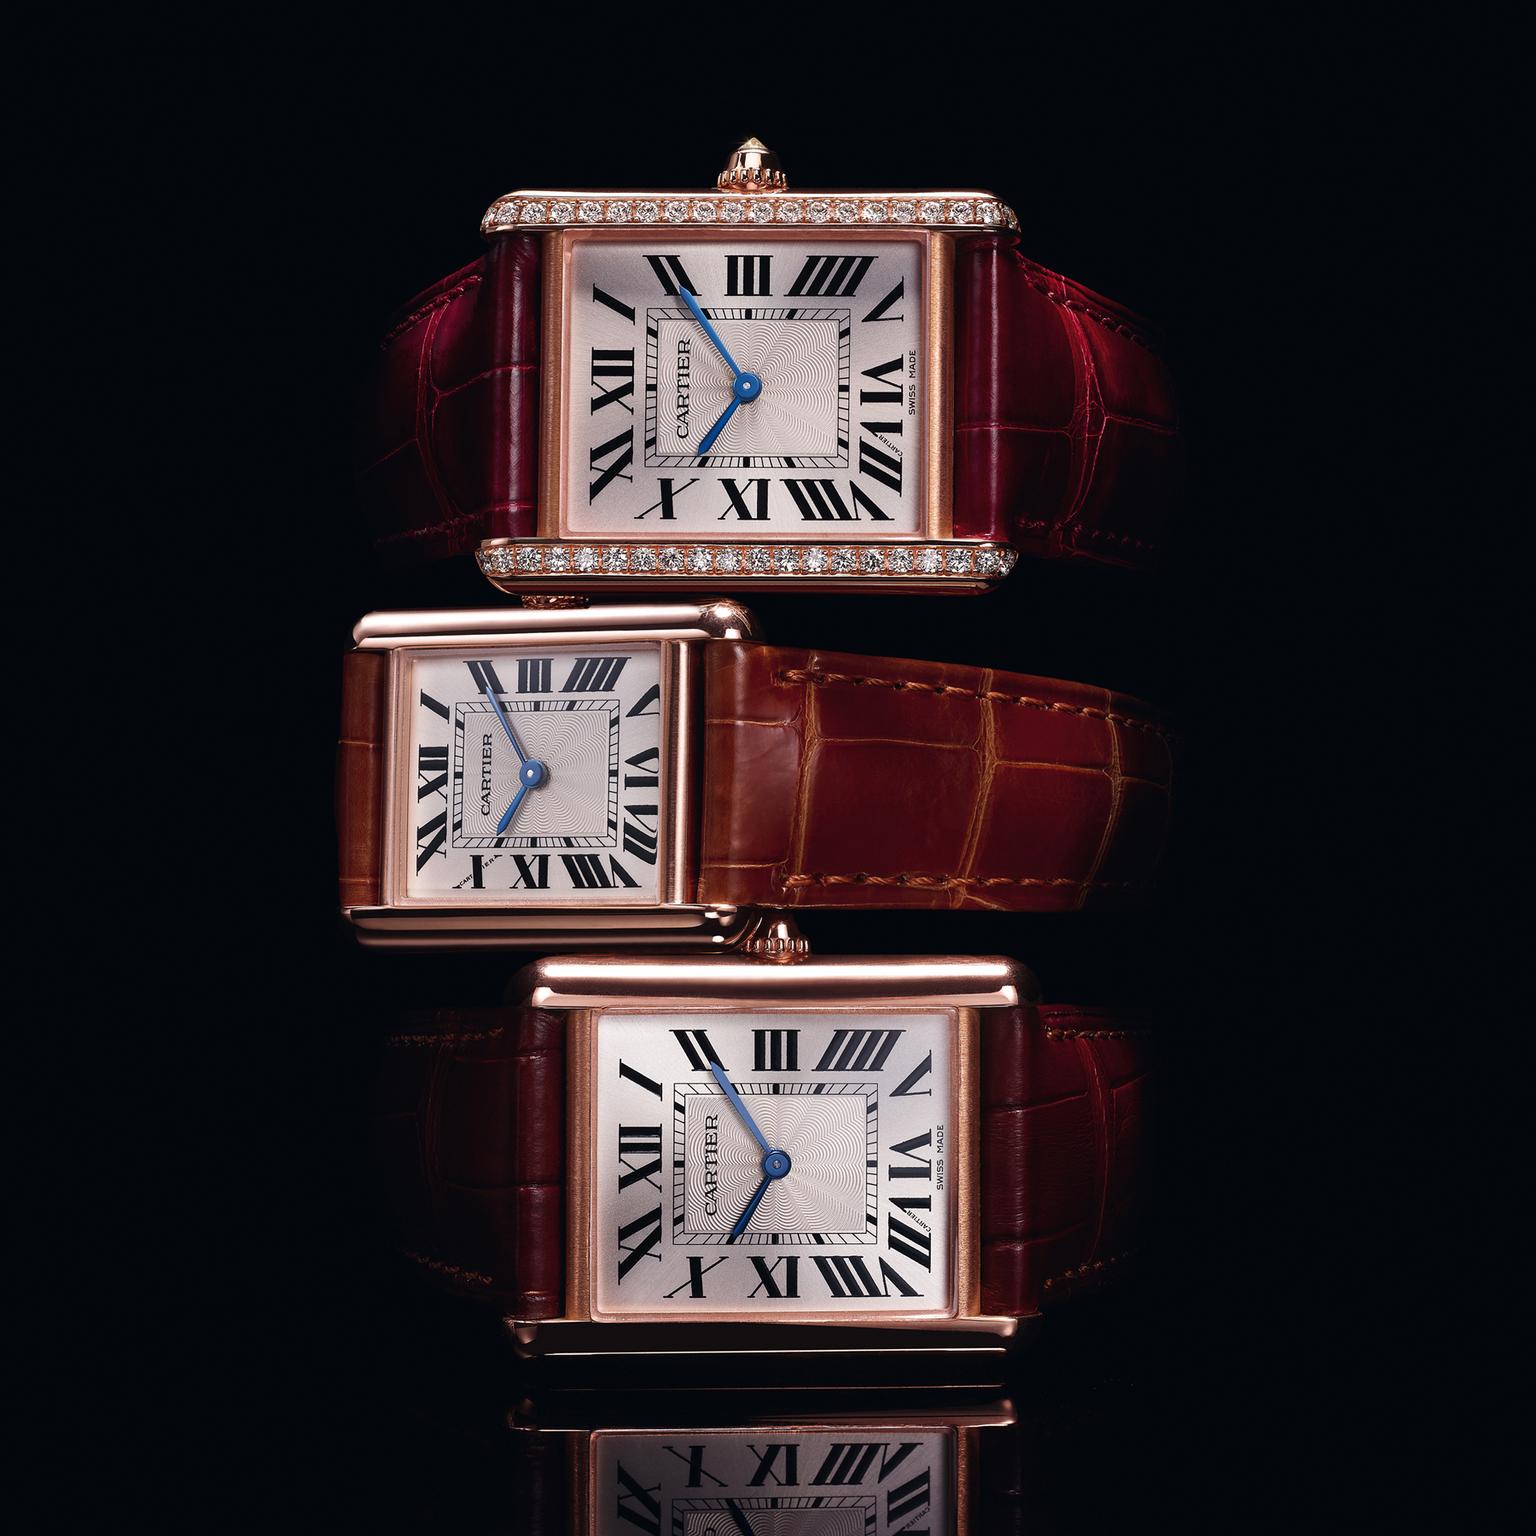 Cartier Rose Gold and Diamond Tank Louis Cartier Watch 25.5mm